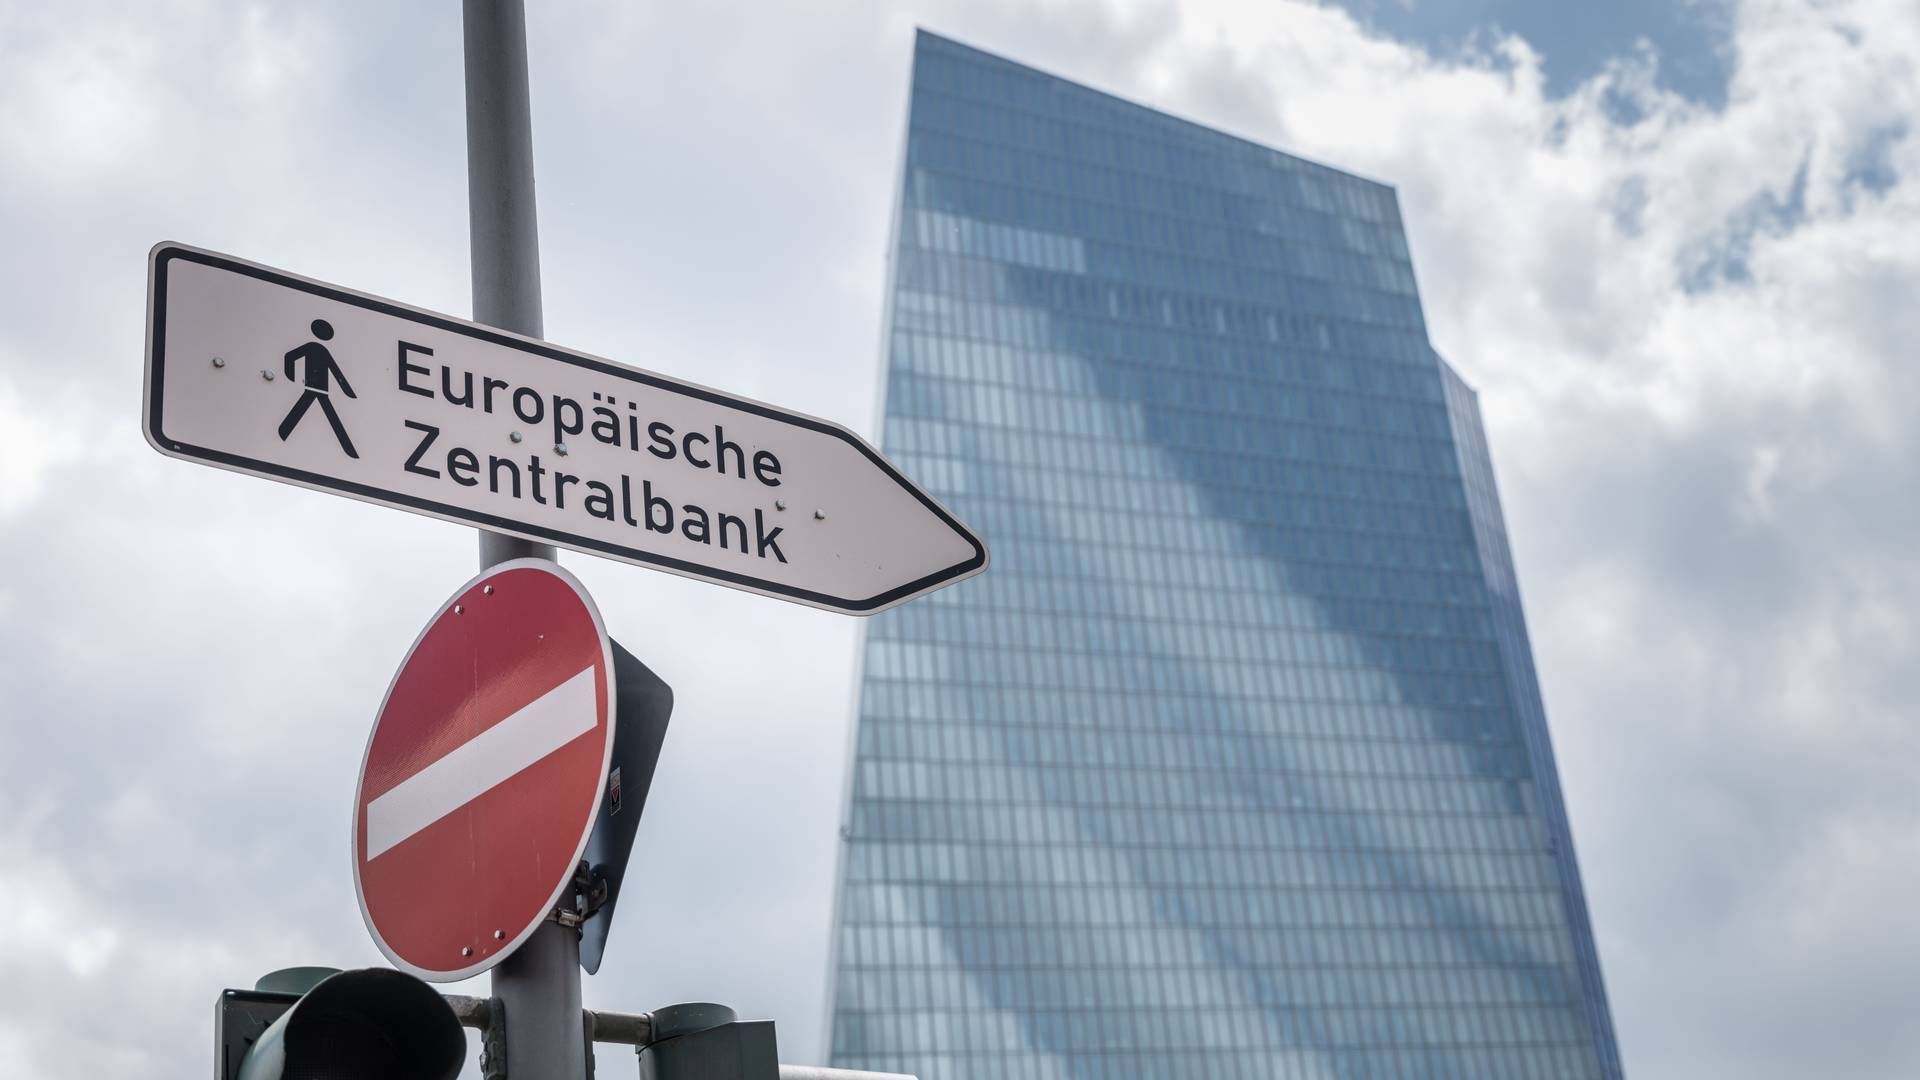 Mehrere Währungshüter kritisieren die Anleihenkäufe der Zentralbank heftig. | Foto: picture alliance/dpa | Frank Rumpenhorst